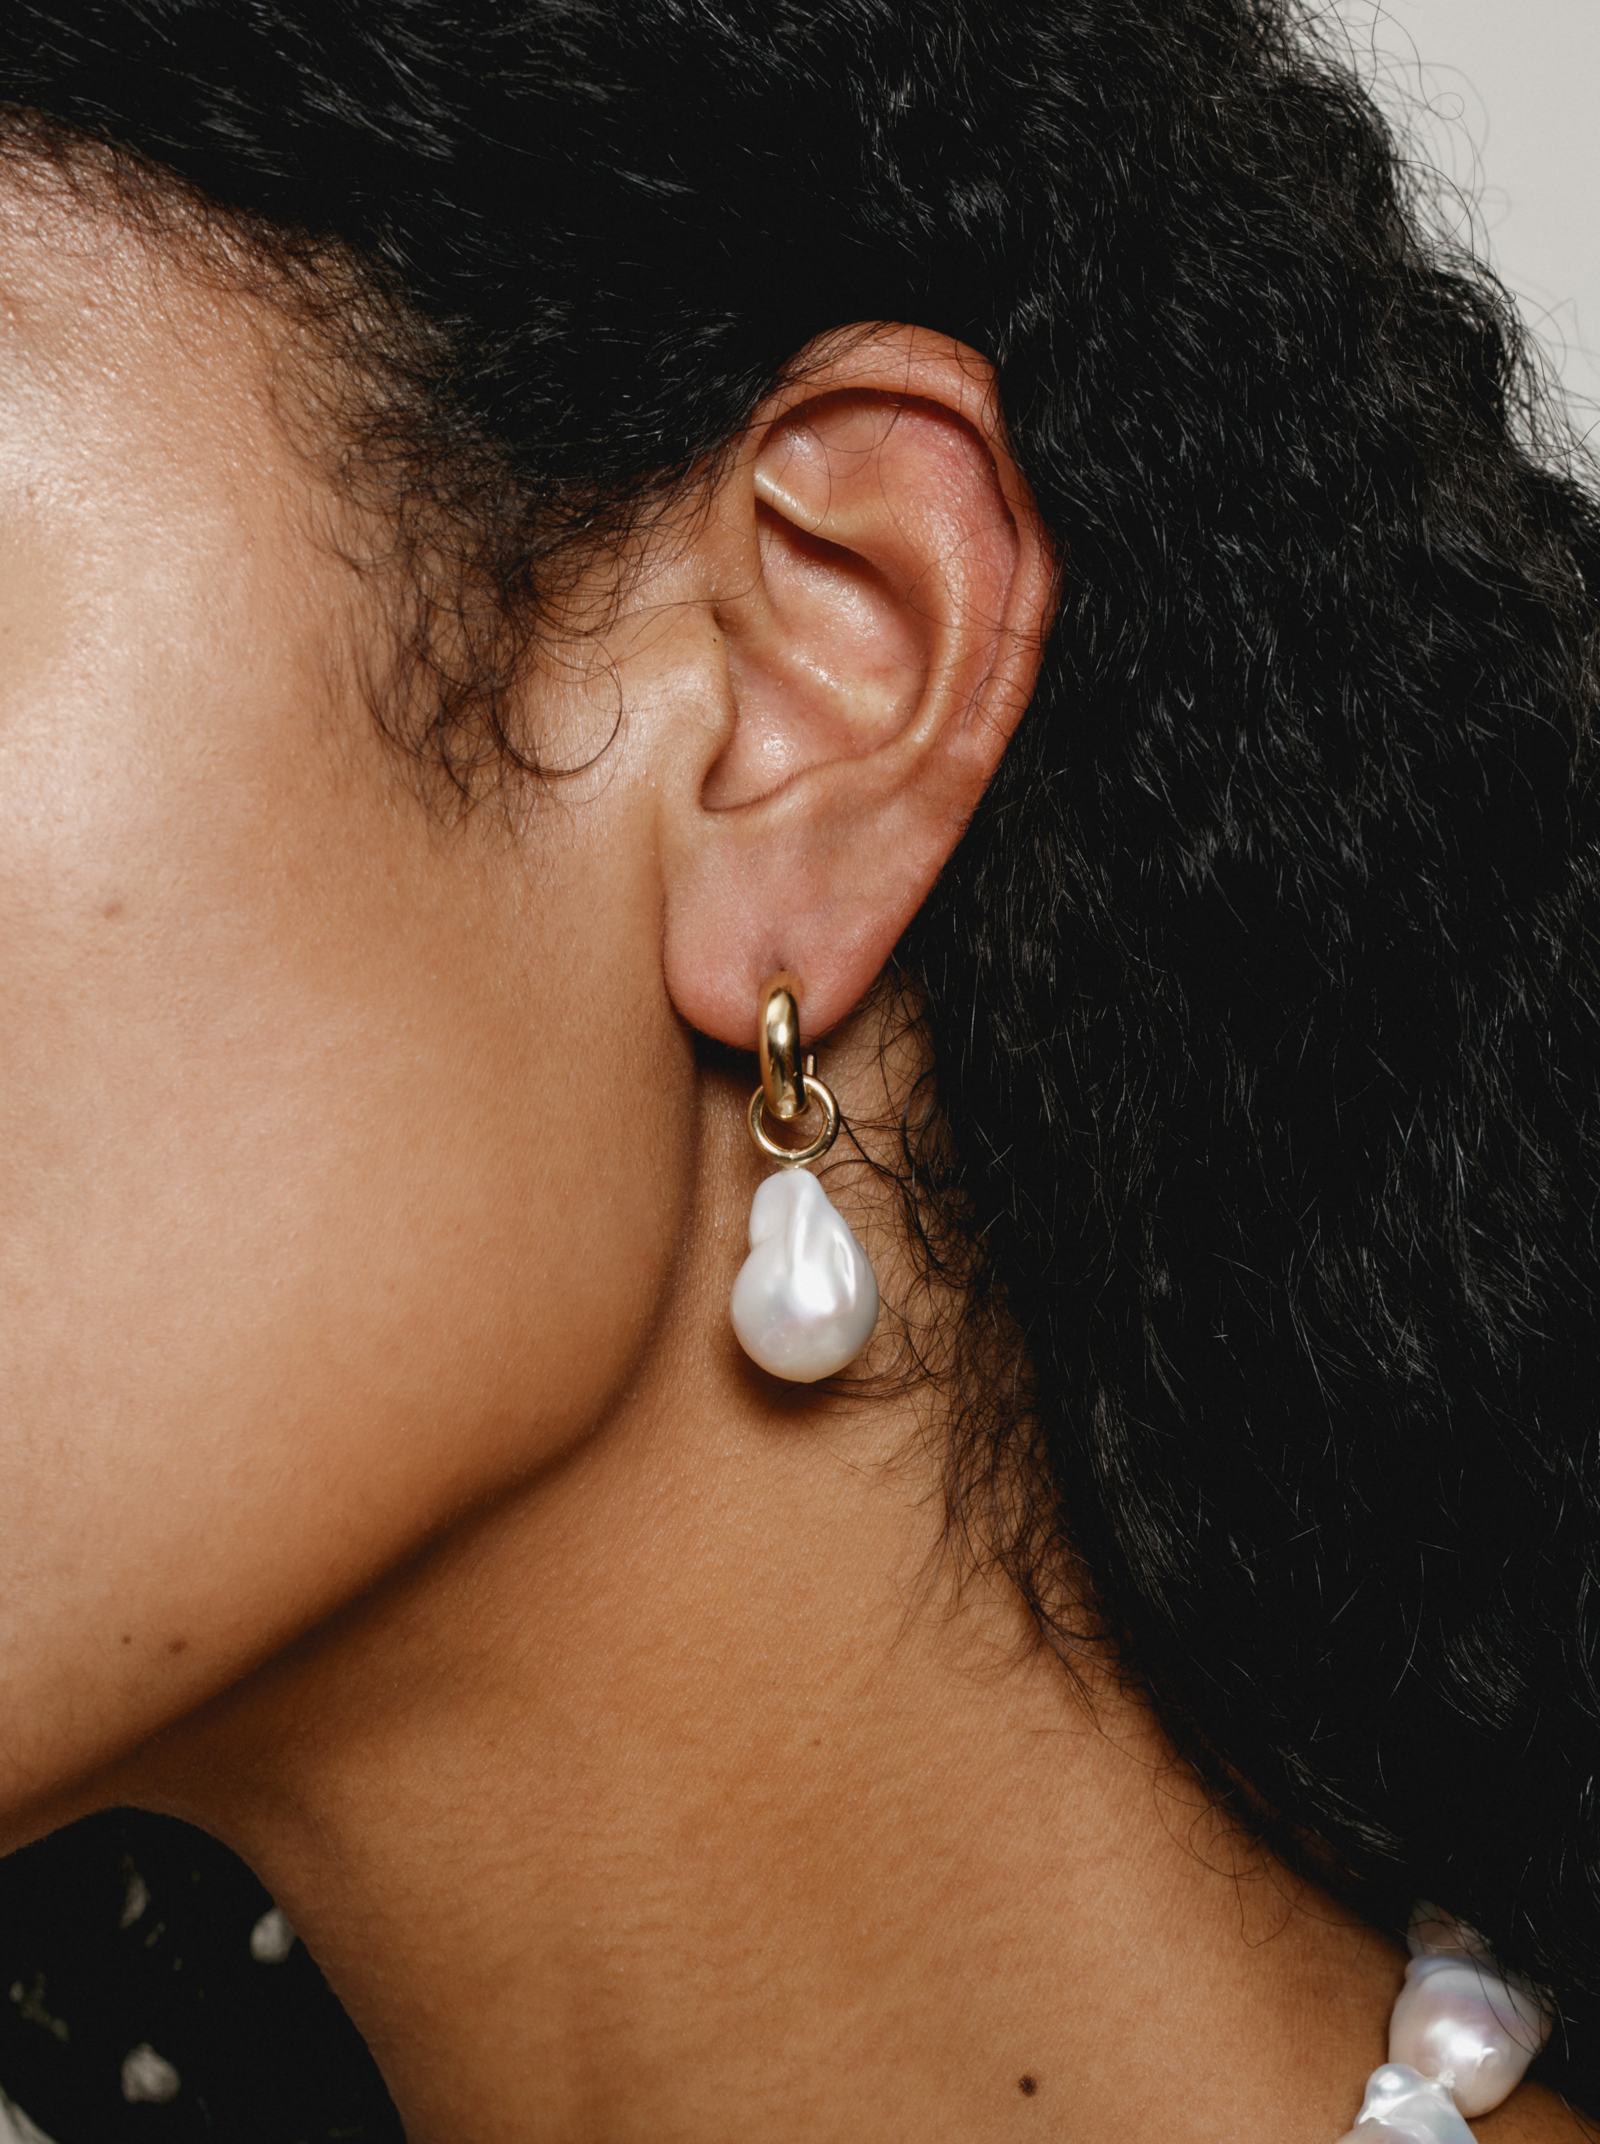 Suki White Pearl Earrings Gold